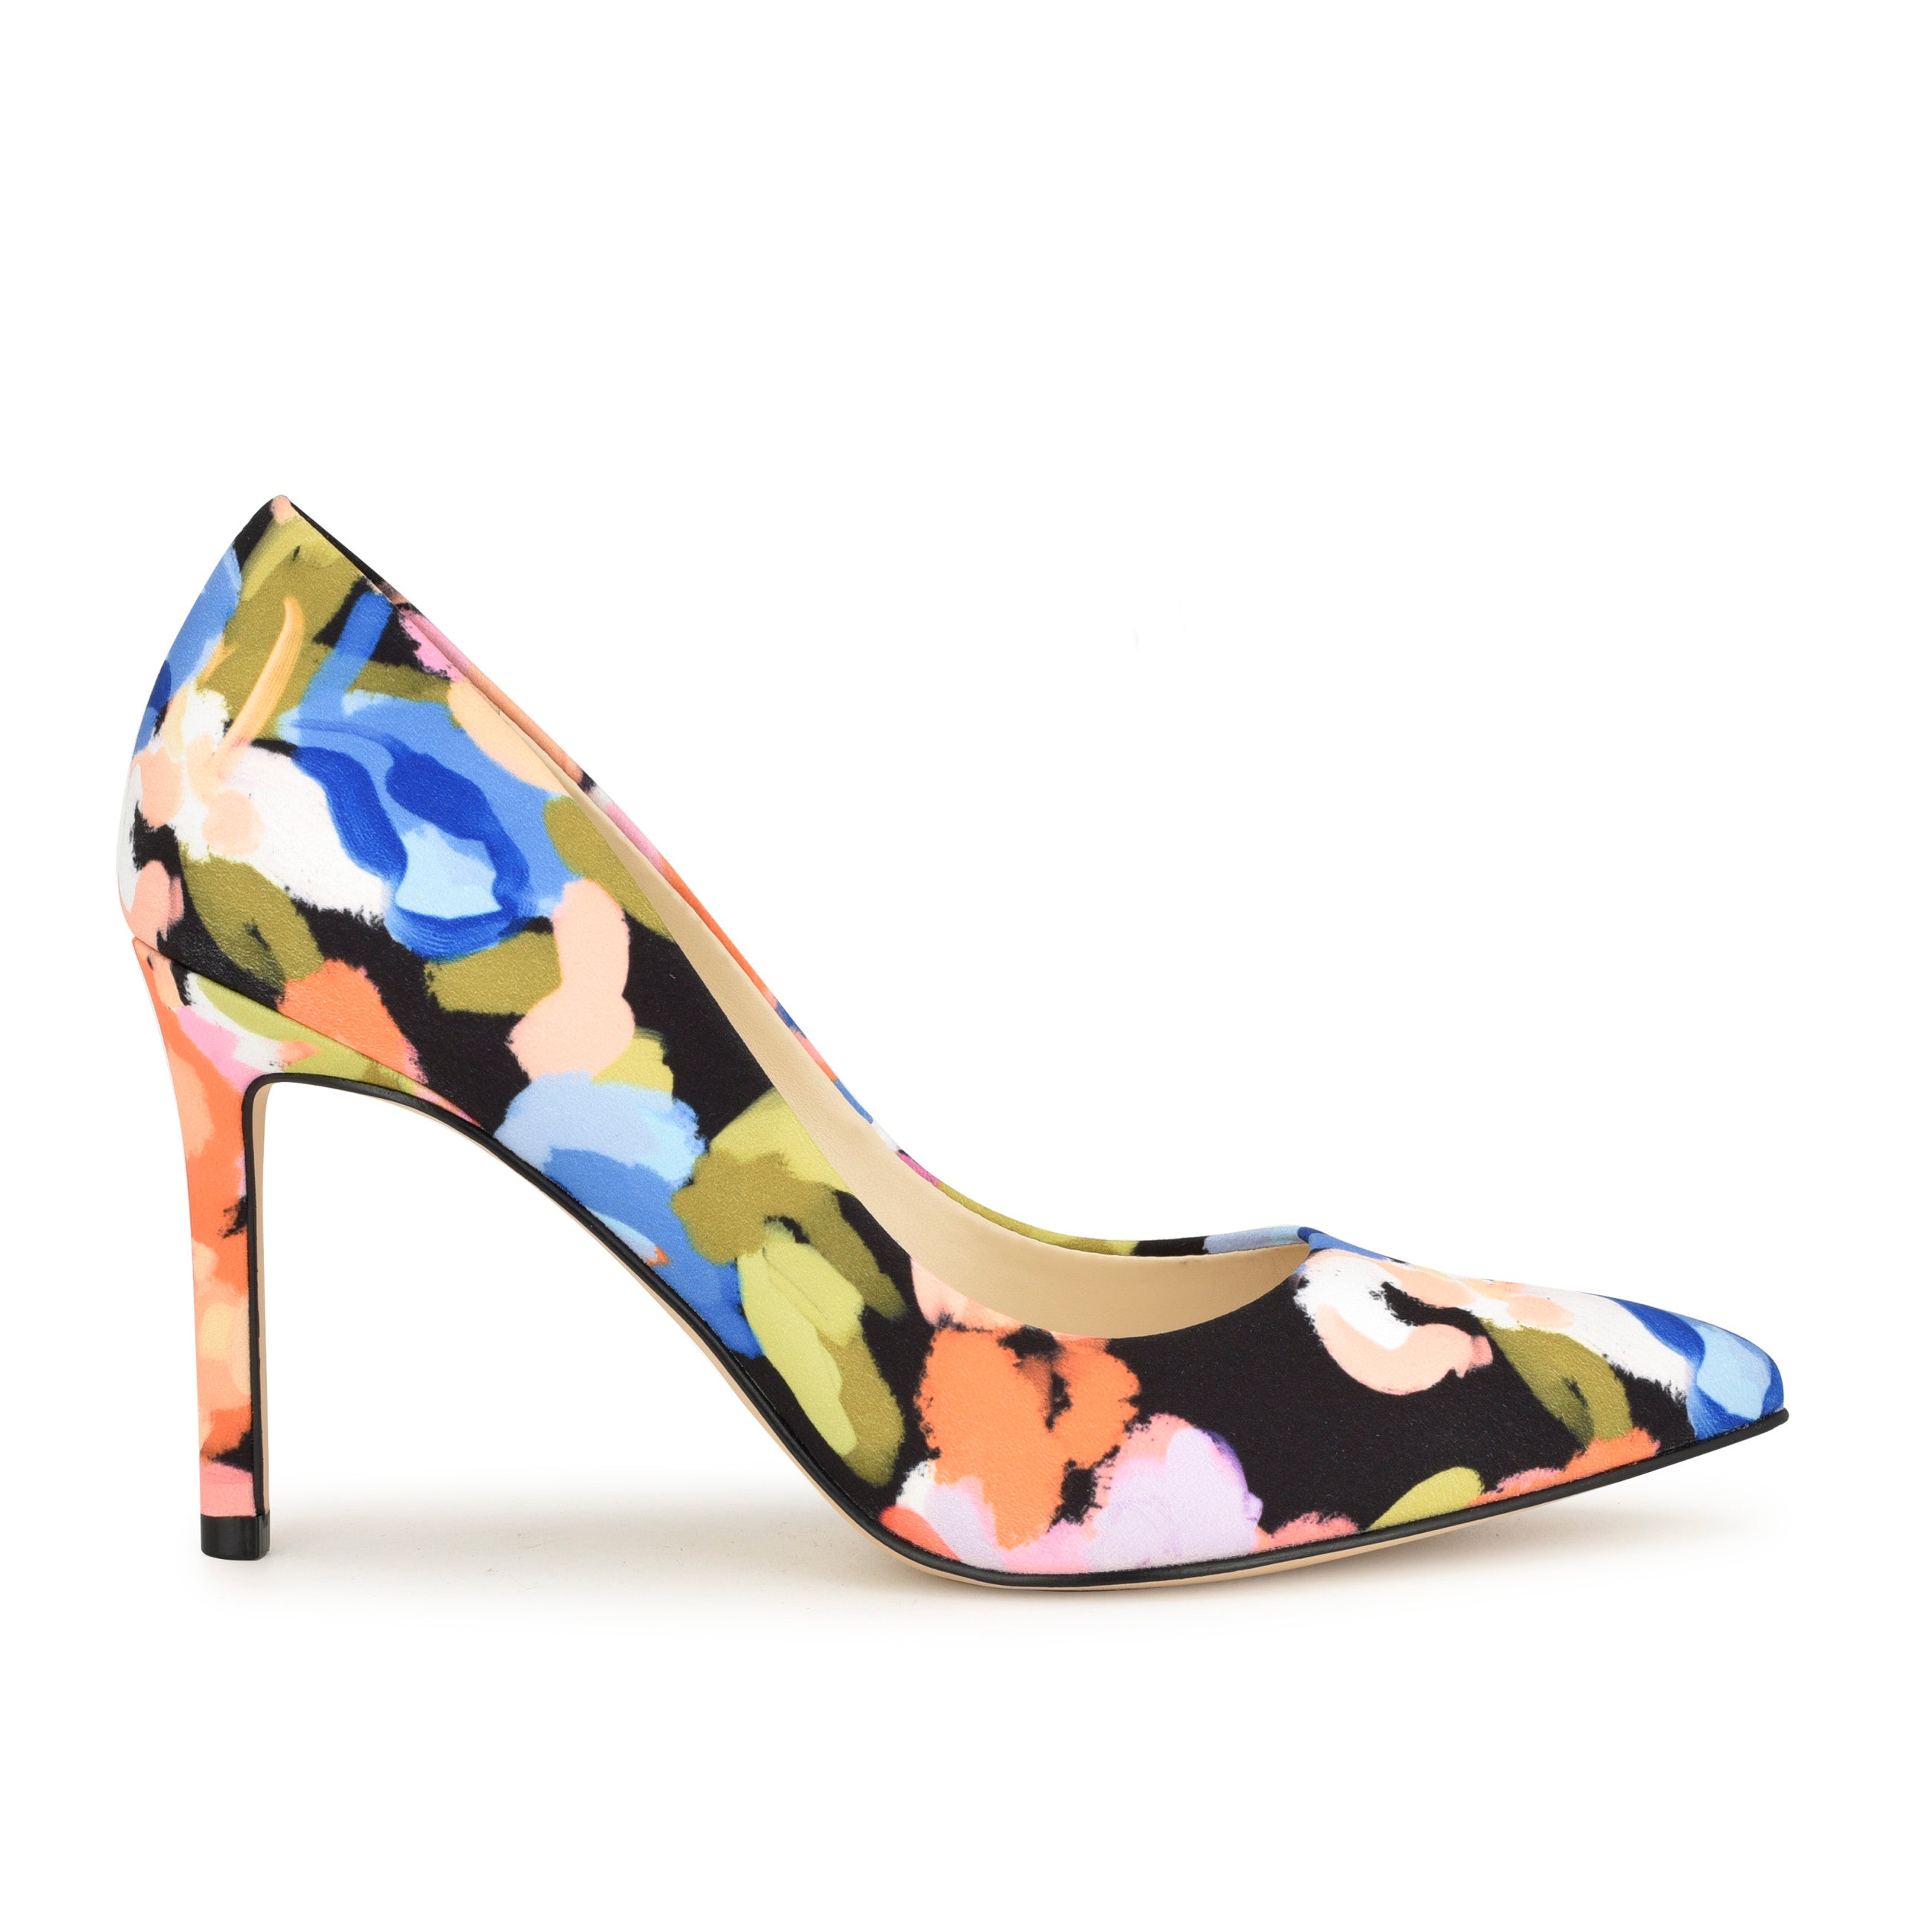 Nine west snakeskin effect 4 inch heels | Oxfam Shop